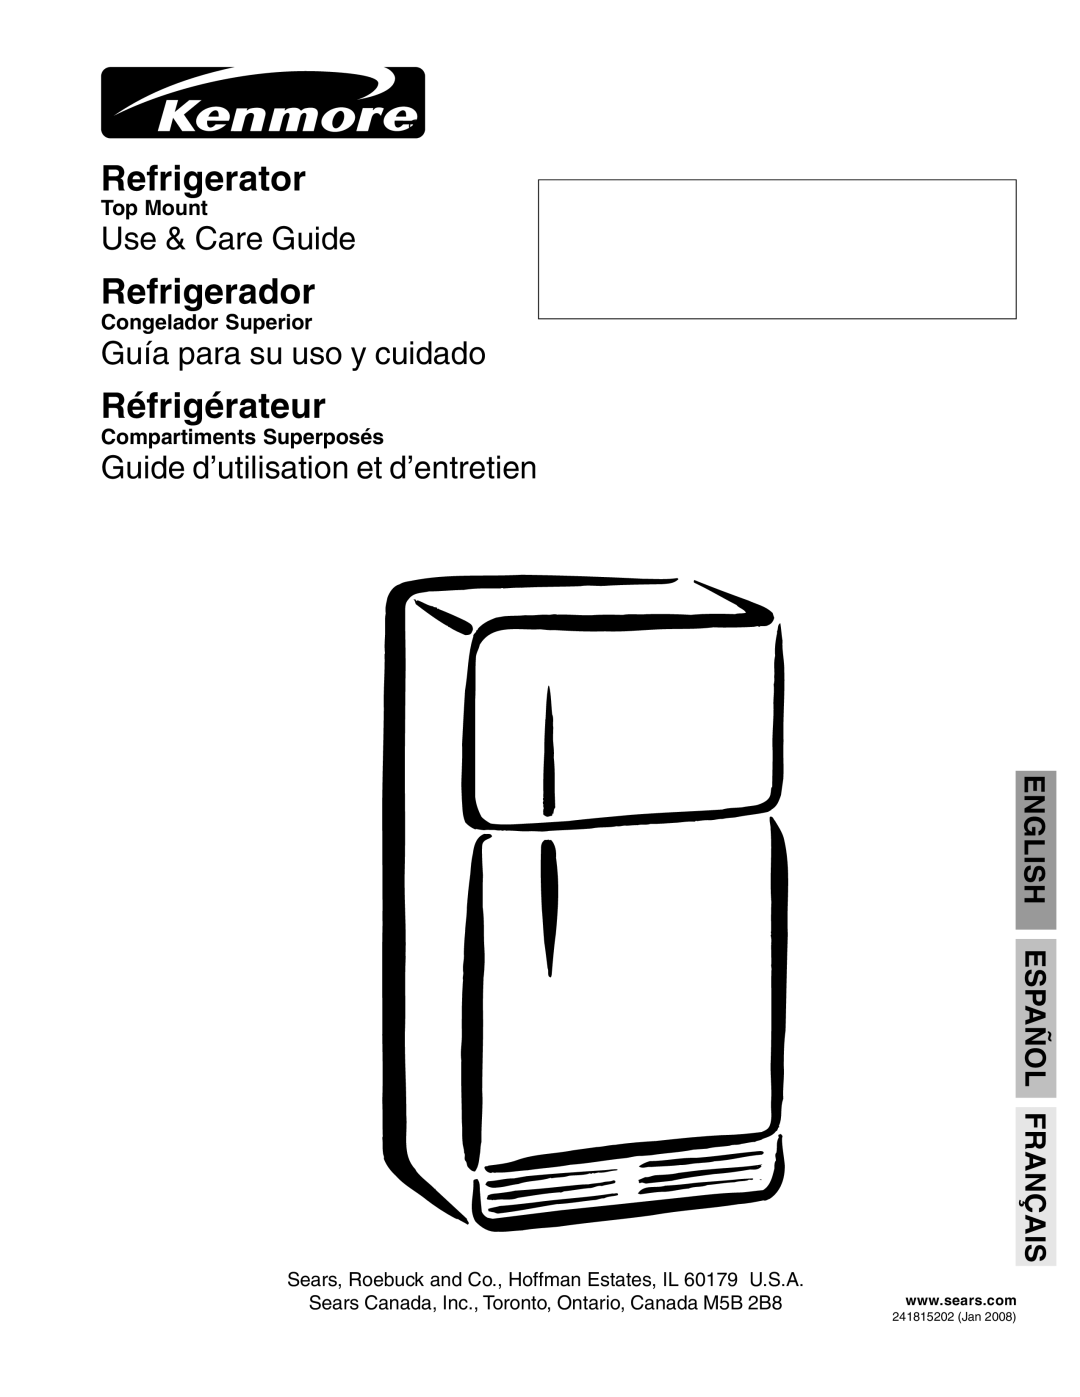 Kenmore 241815202 manual English Español Français, Refrigerator, Refrigerador, Réfrigérateur, Use & Care Guide, Top Mount 